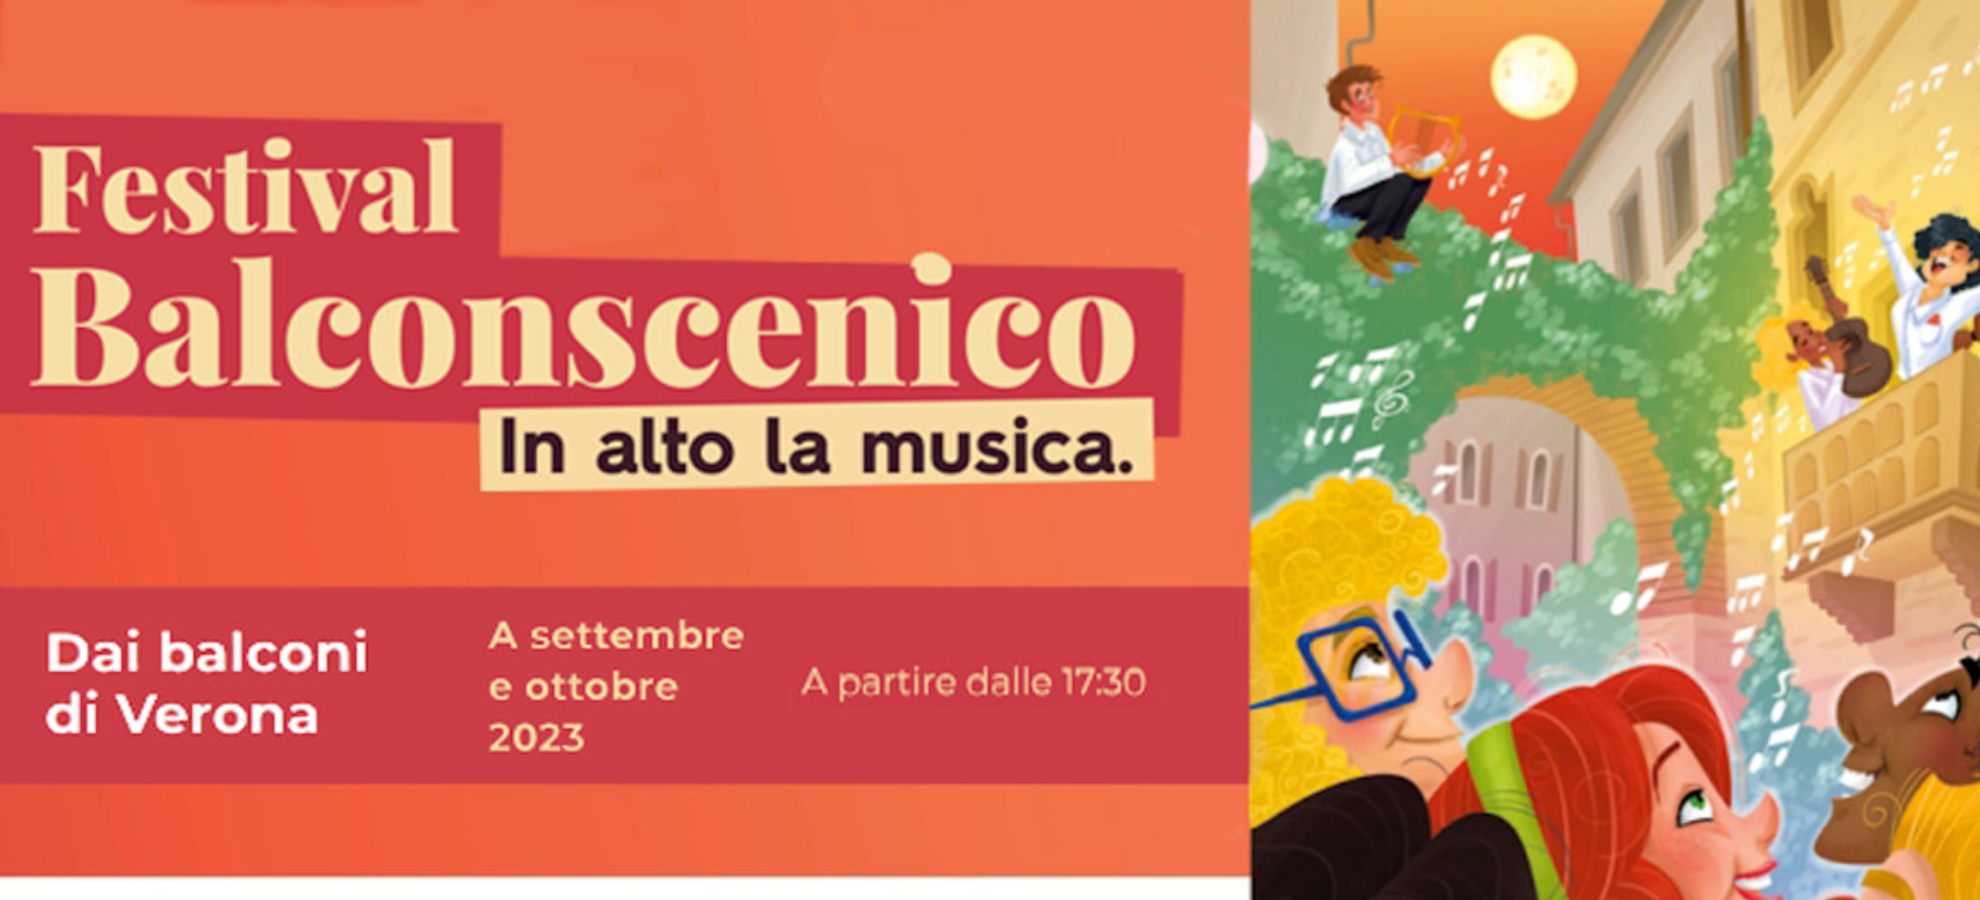 Festival Balcoscenico a Verona